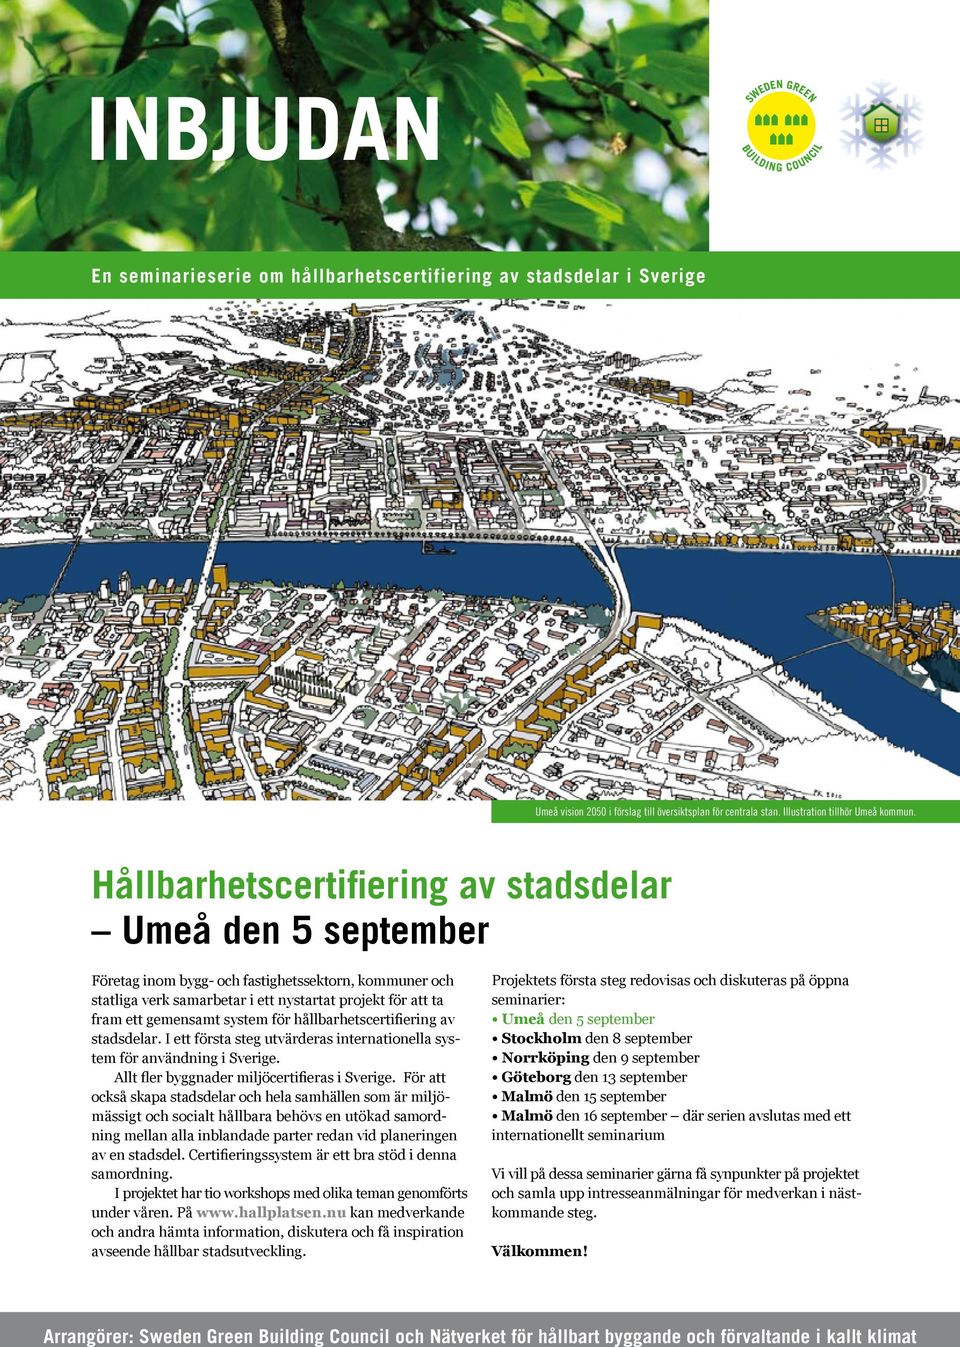 för hållbarhetscertifiering av stadsdelar. I ett första steg utvärderas internationella system för användning i Sverige. Allt fler byggnader miljöcertifieras i Sverige.